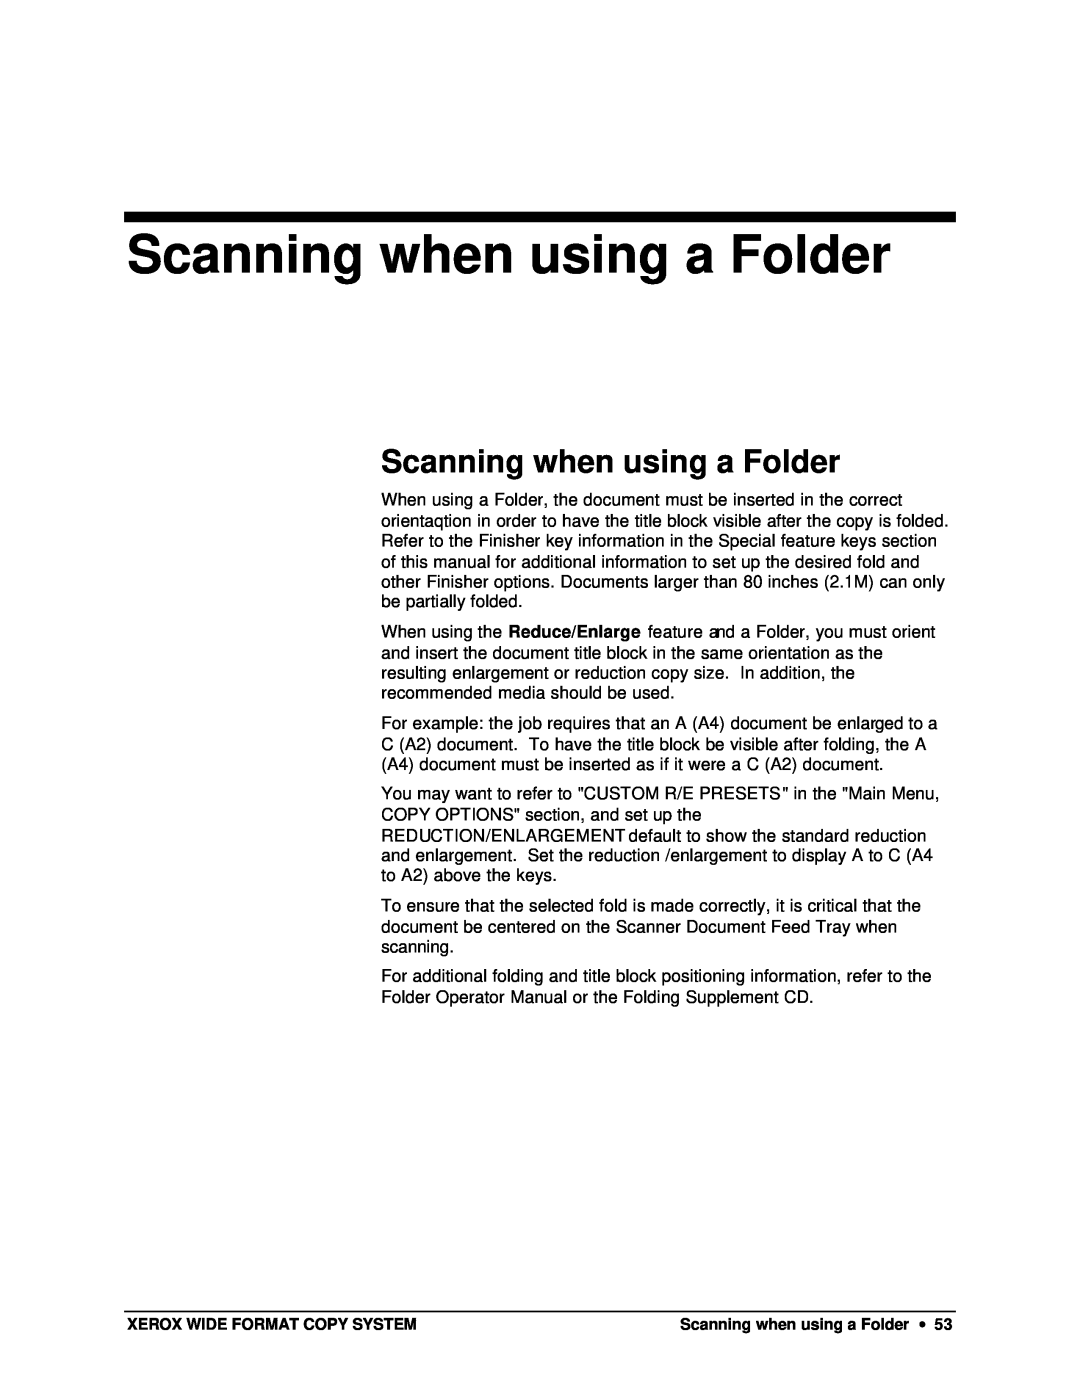 Xerox X2, 8825, 8850, 8830 manual Scanning when using a Folder 